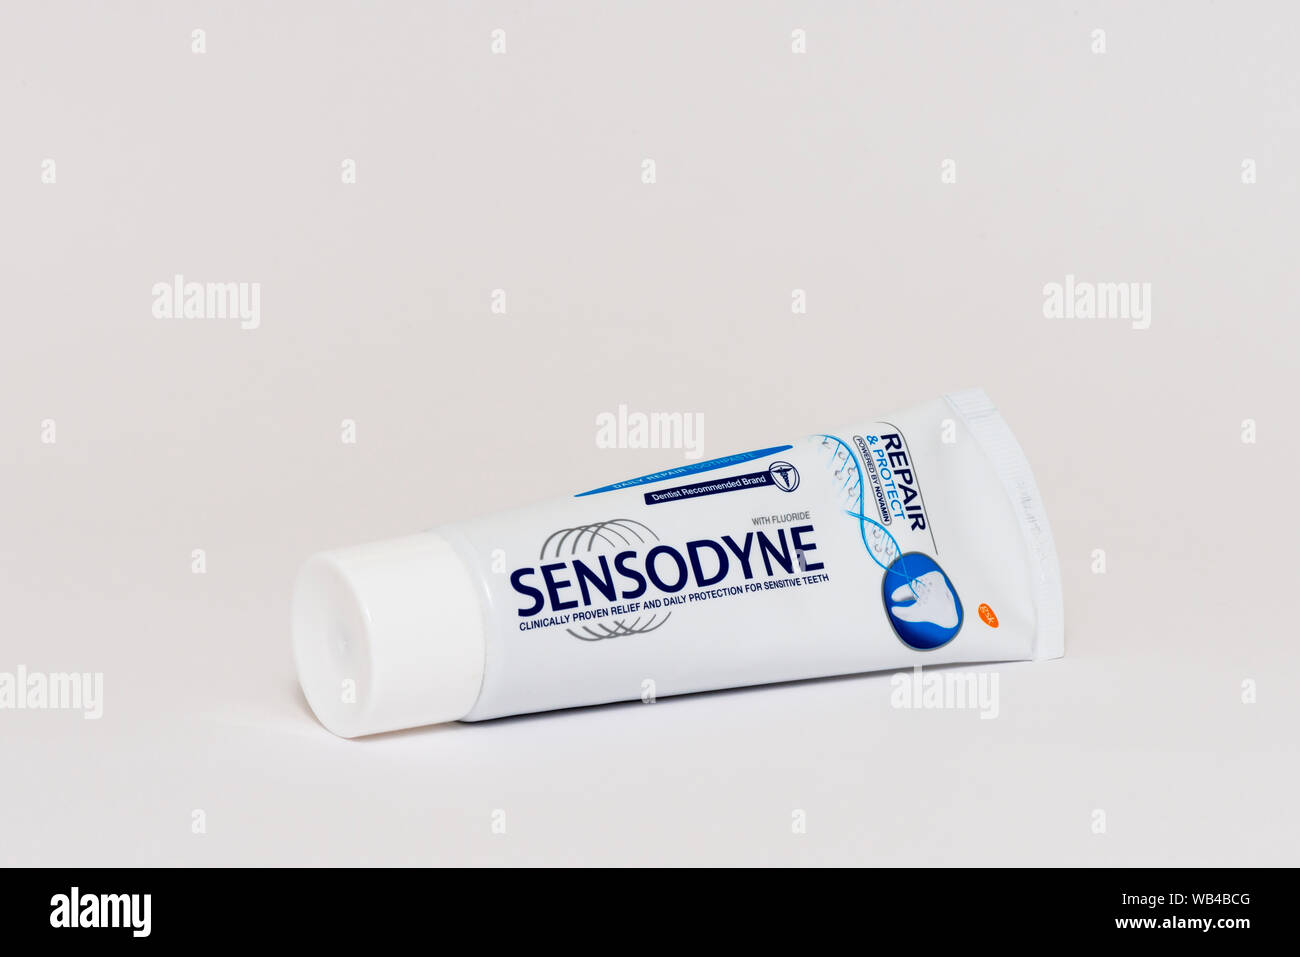 Hygiène dentaire et dentifrice au fluorure Sensodyne « Repair & Protect » avec Novamin sur fond blanc Banque D'Images